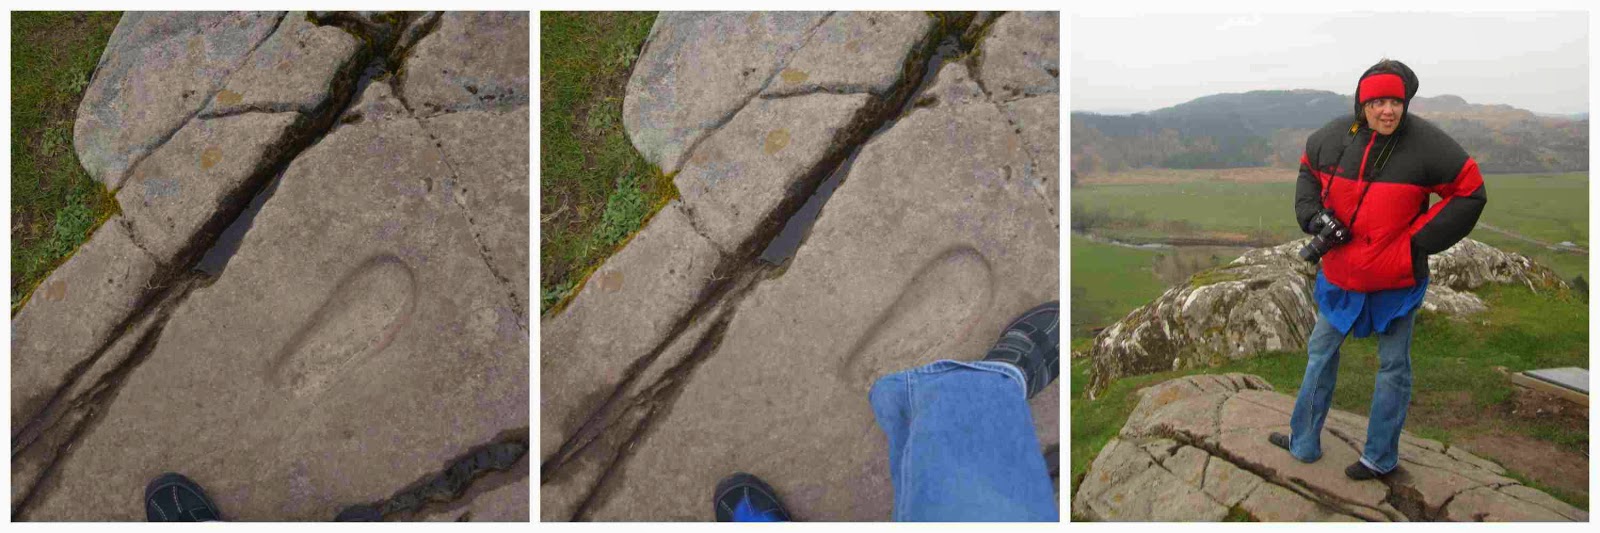 Dunadd Fort footprint